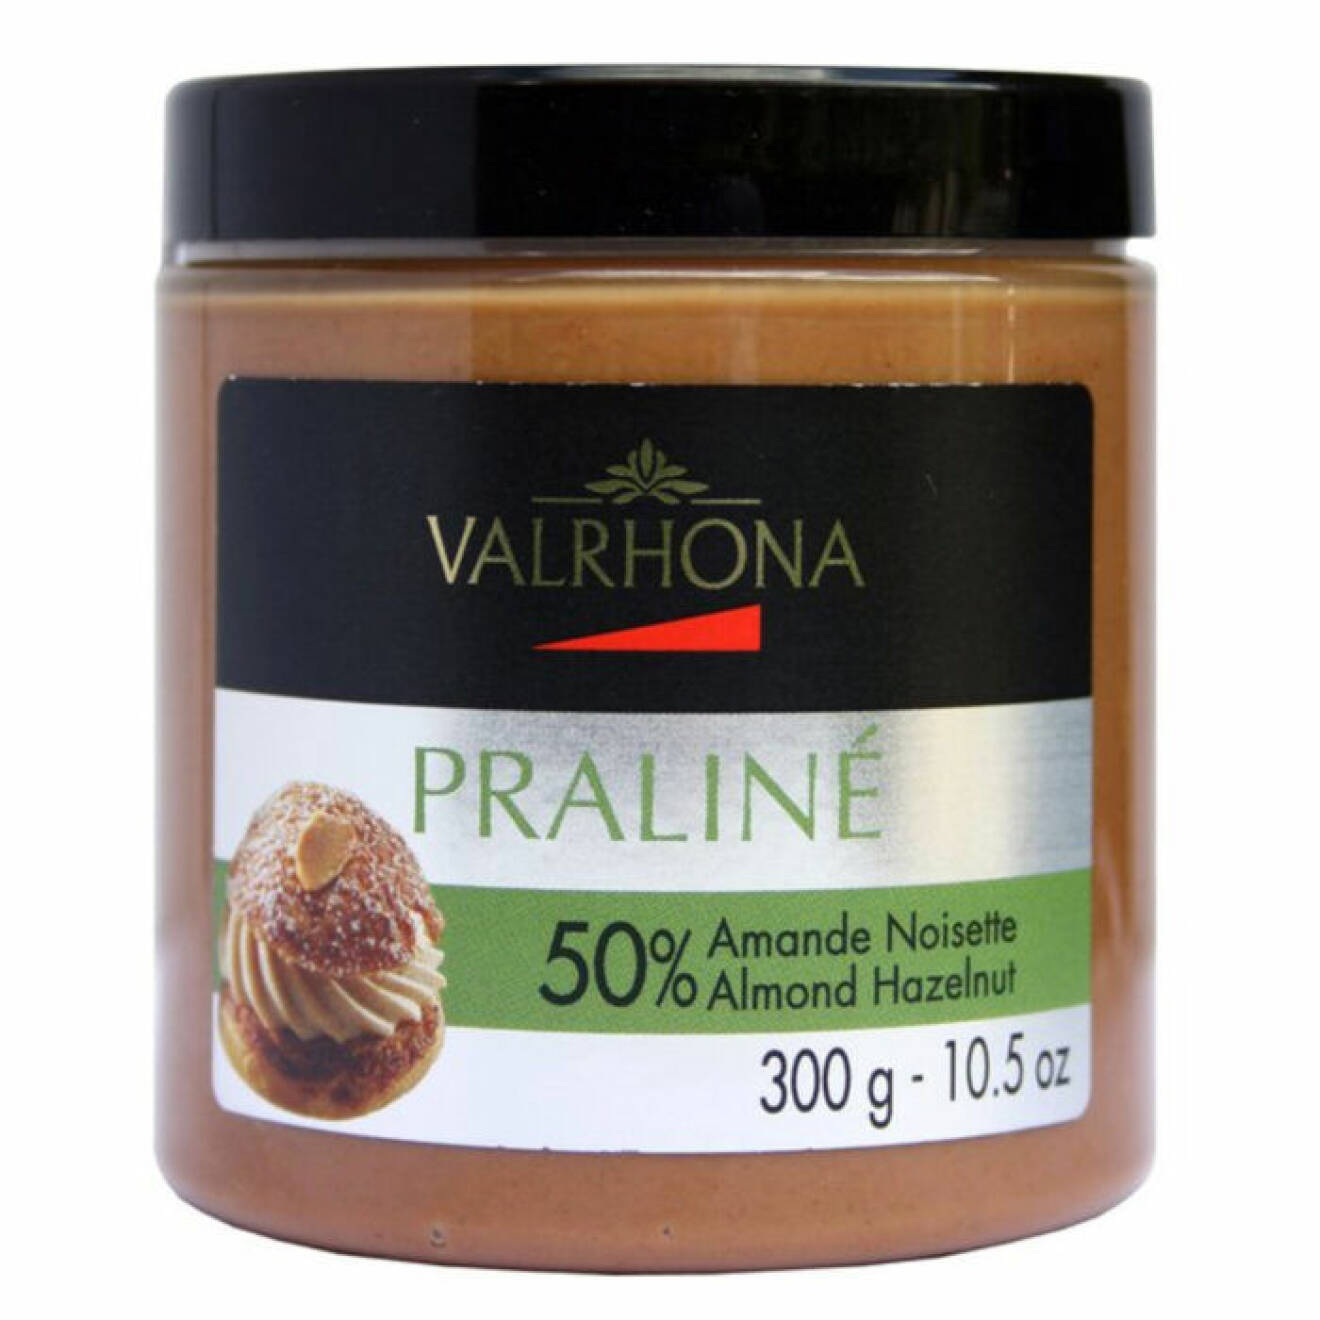 Praliné från Valrhona